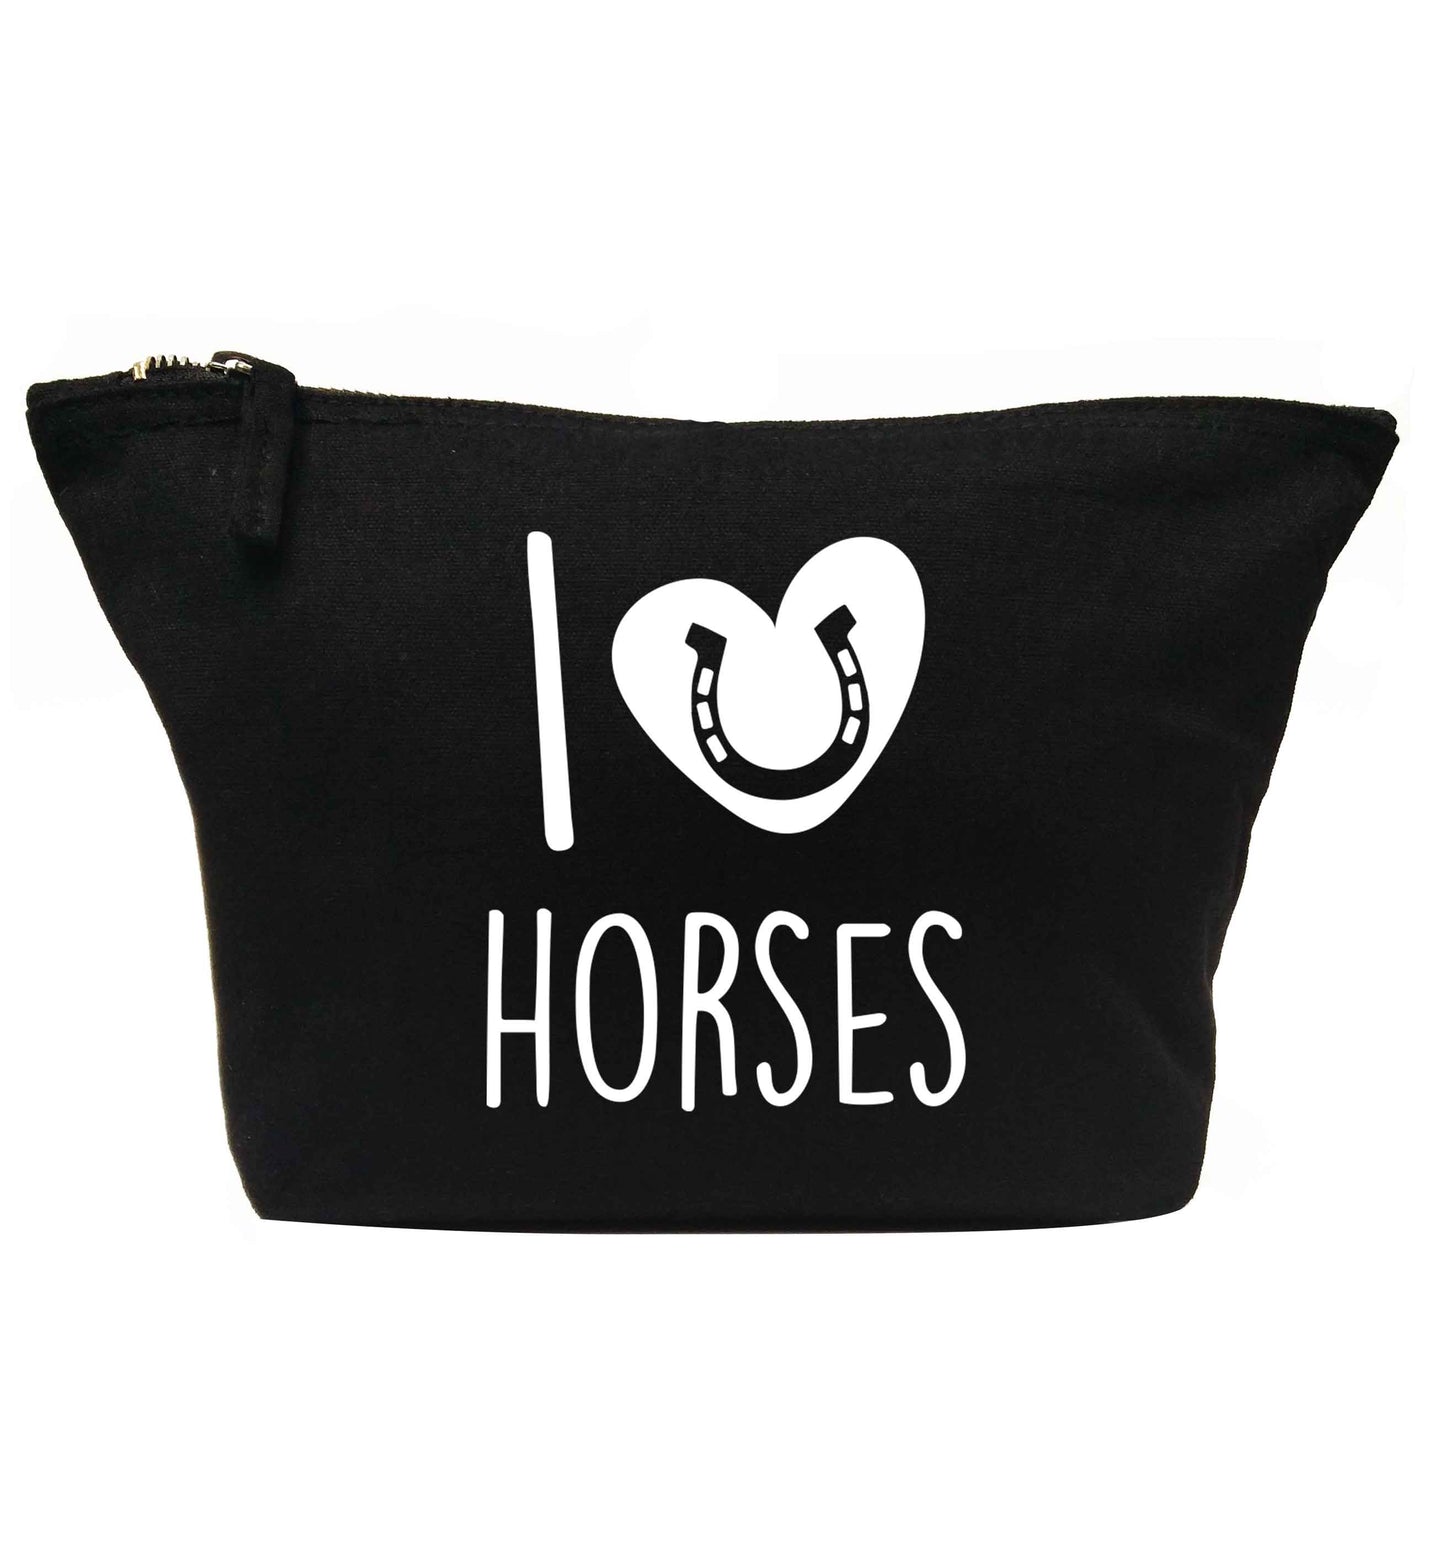 I love horses | Makeup / wash bag